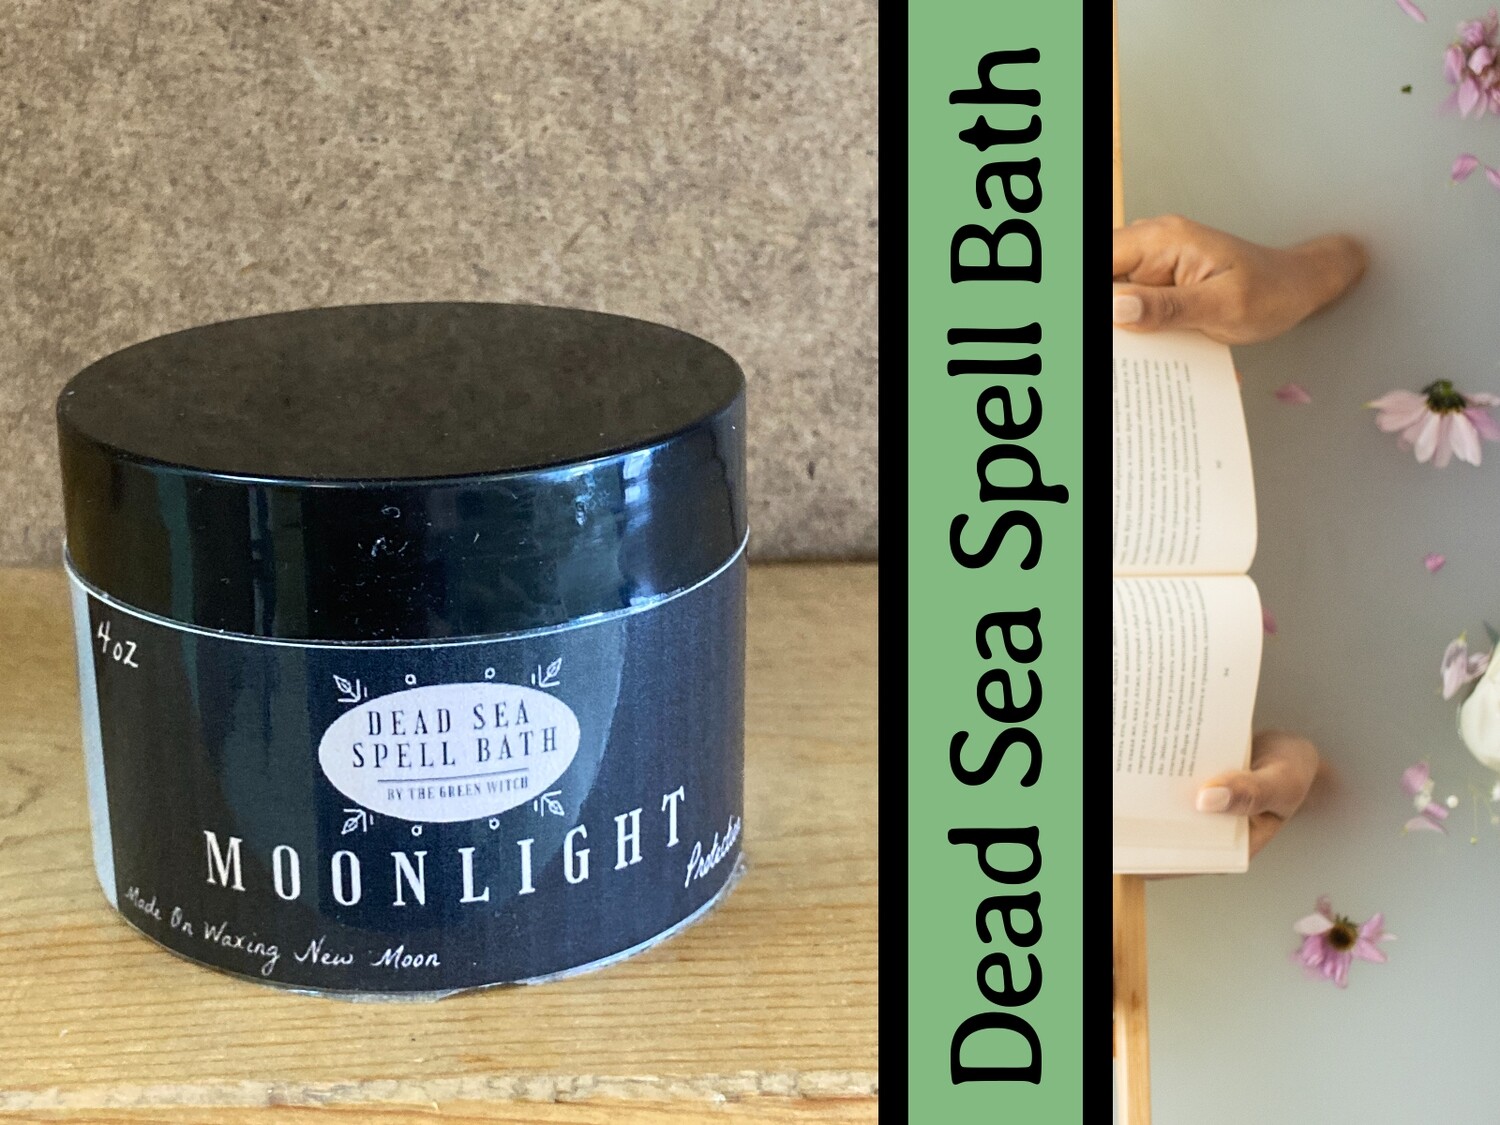 Dead Sea Spell Bath- Moonlight